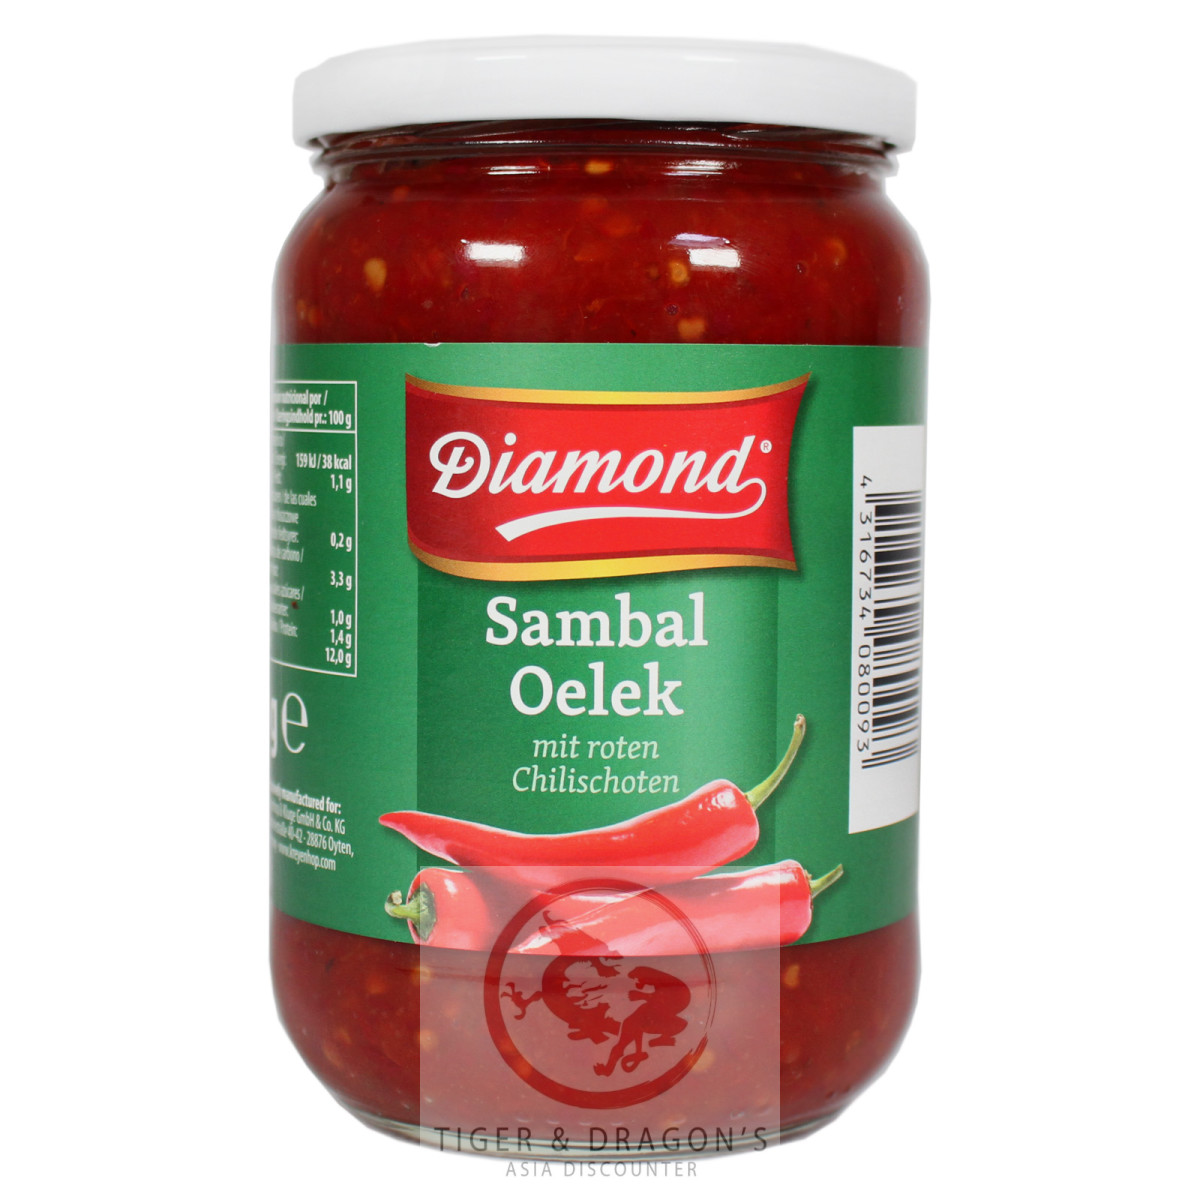 Diamond Sambal Oelek scharf 740g